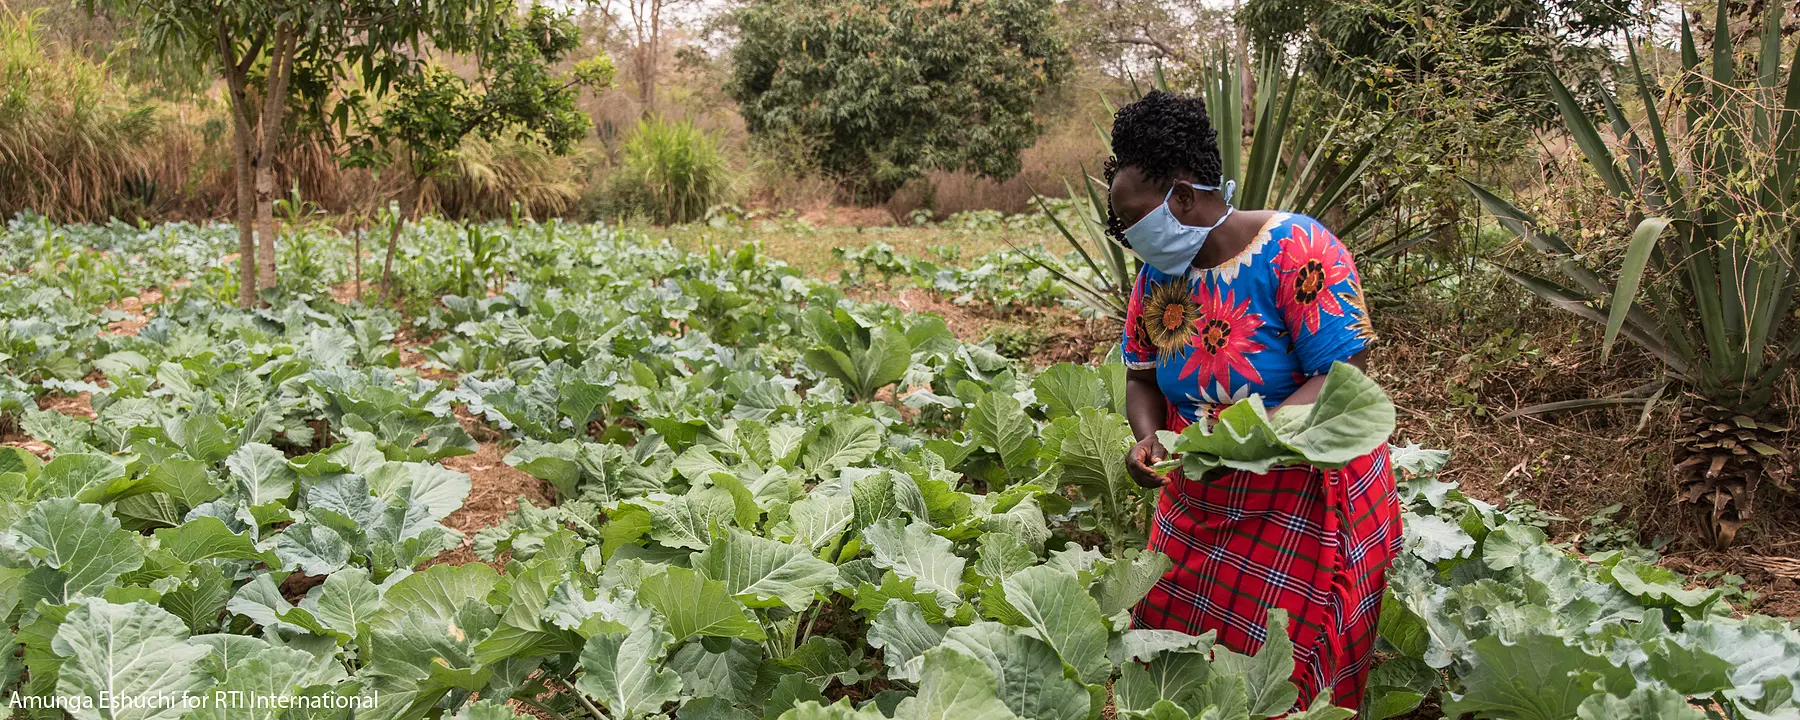 A Kenyan farmer tends to her crops.